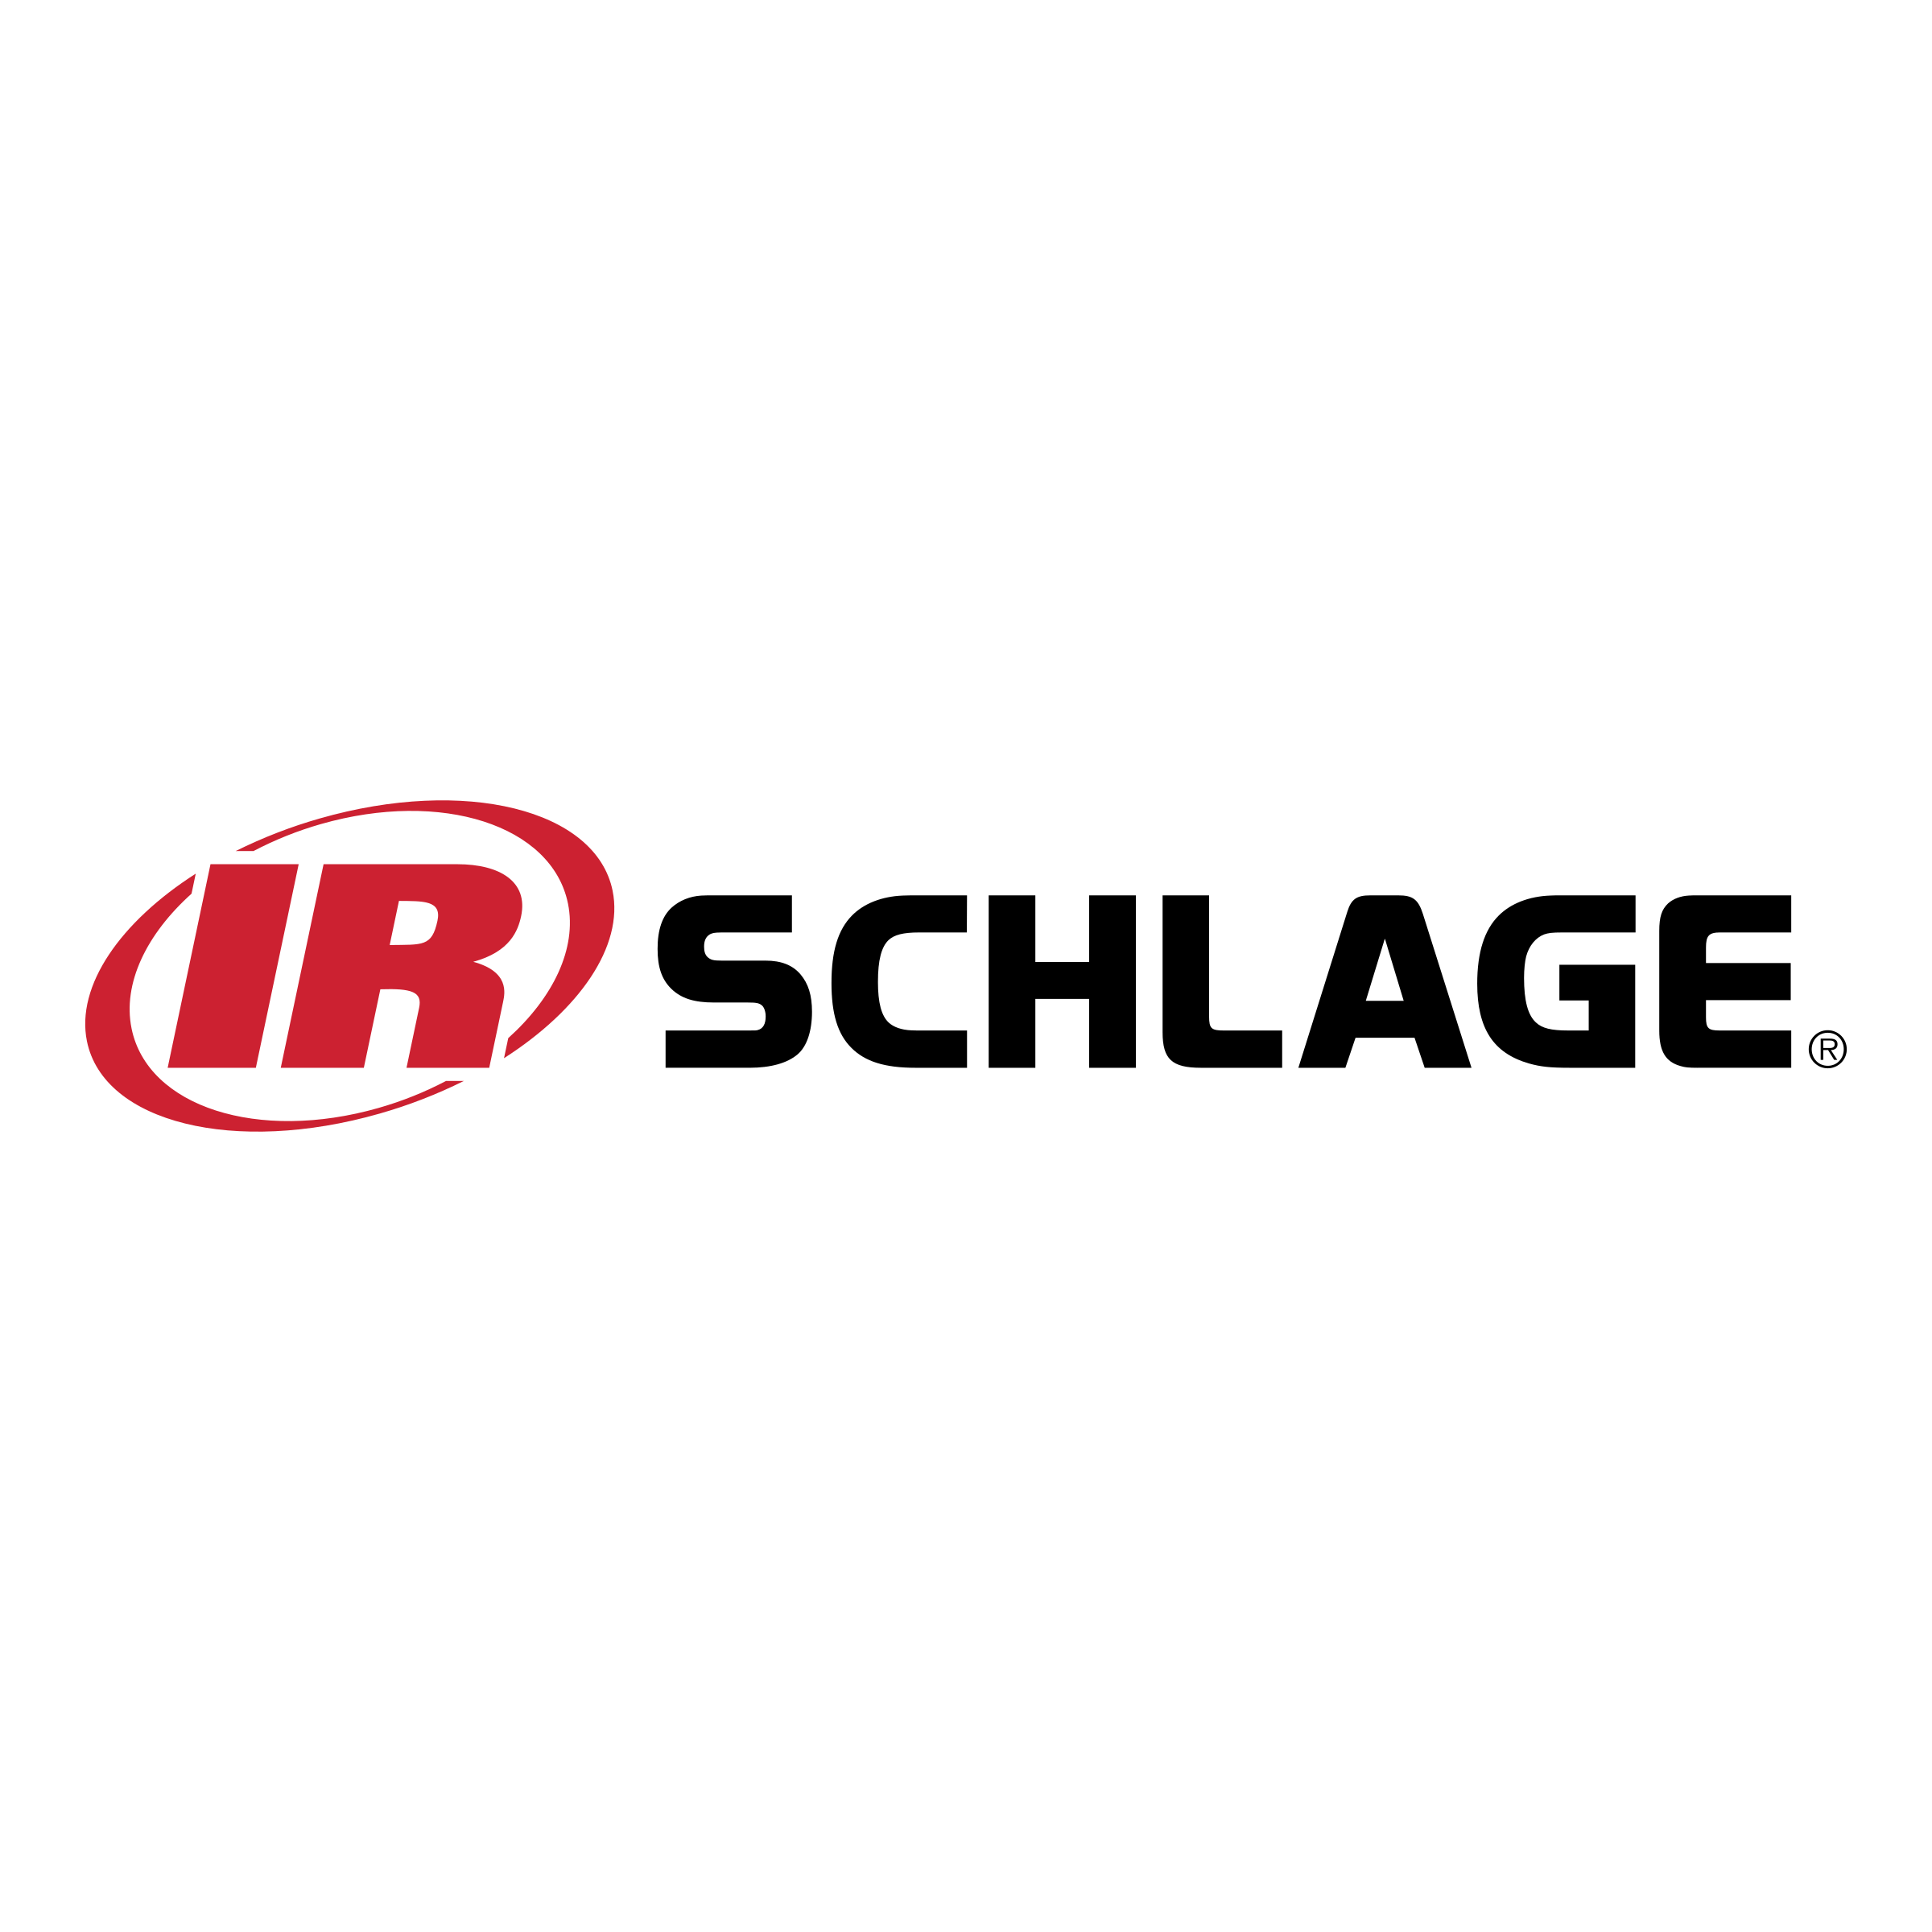 Schlage Logo - Schlage Logo PNG Transparent & SVG Vector